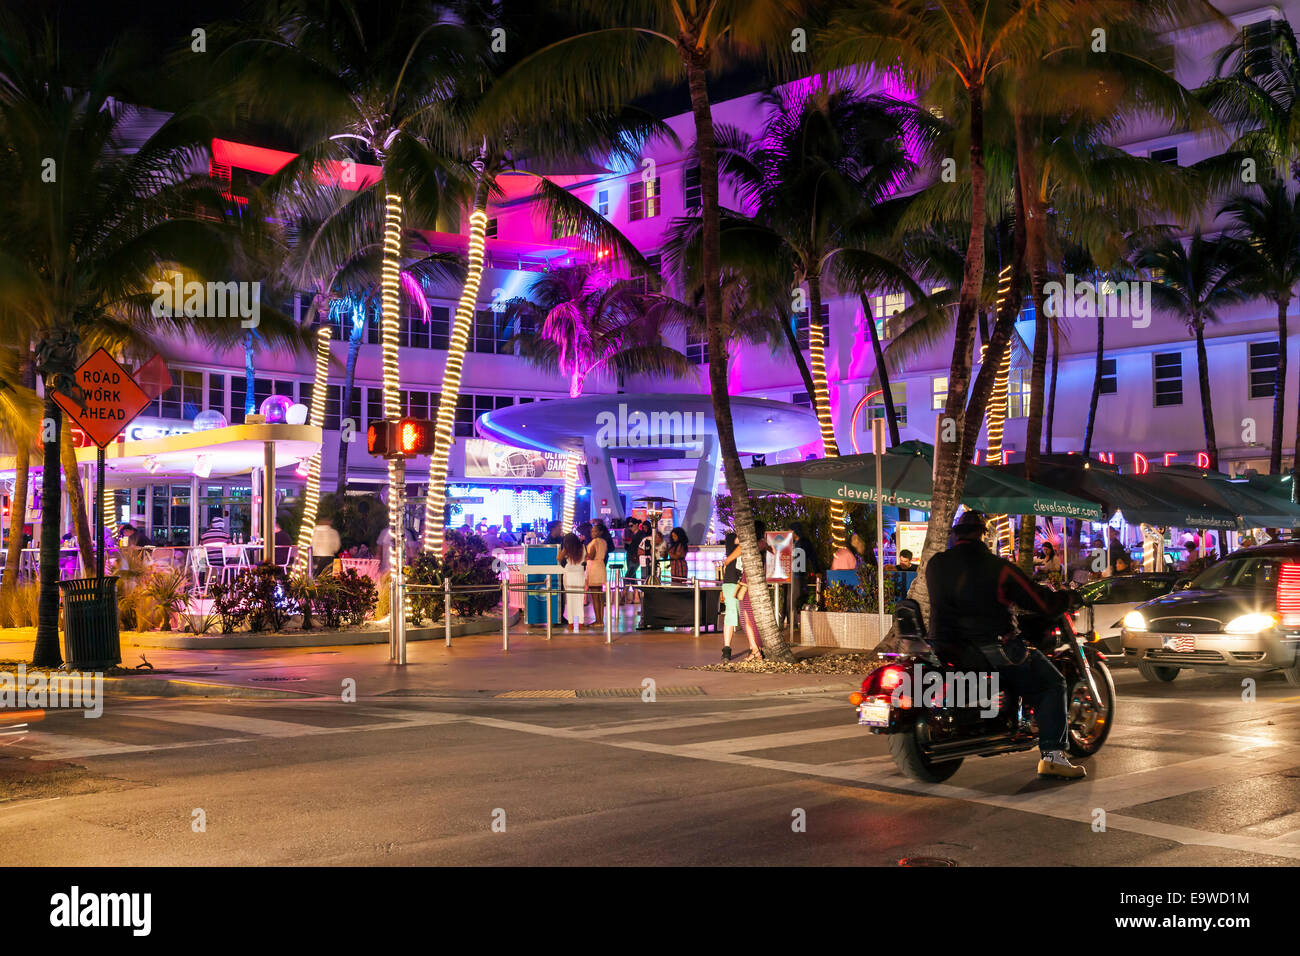 Éclairage coloré de l'hôtel Clevelander discothèque bar et terrasse extérieure sur Deco Drive dans South Beach Miami, Floride, USA. Banque D'Images